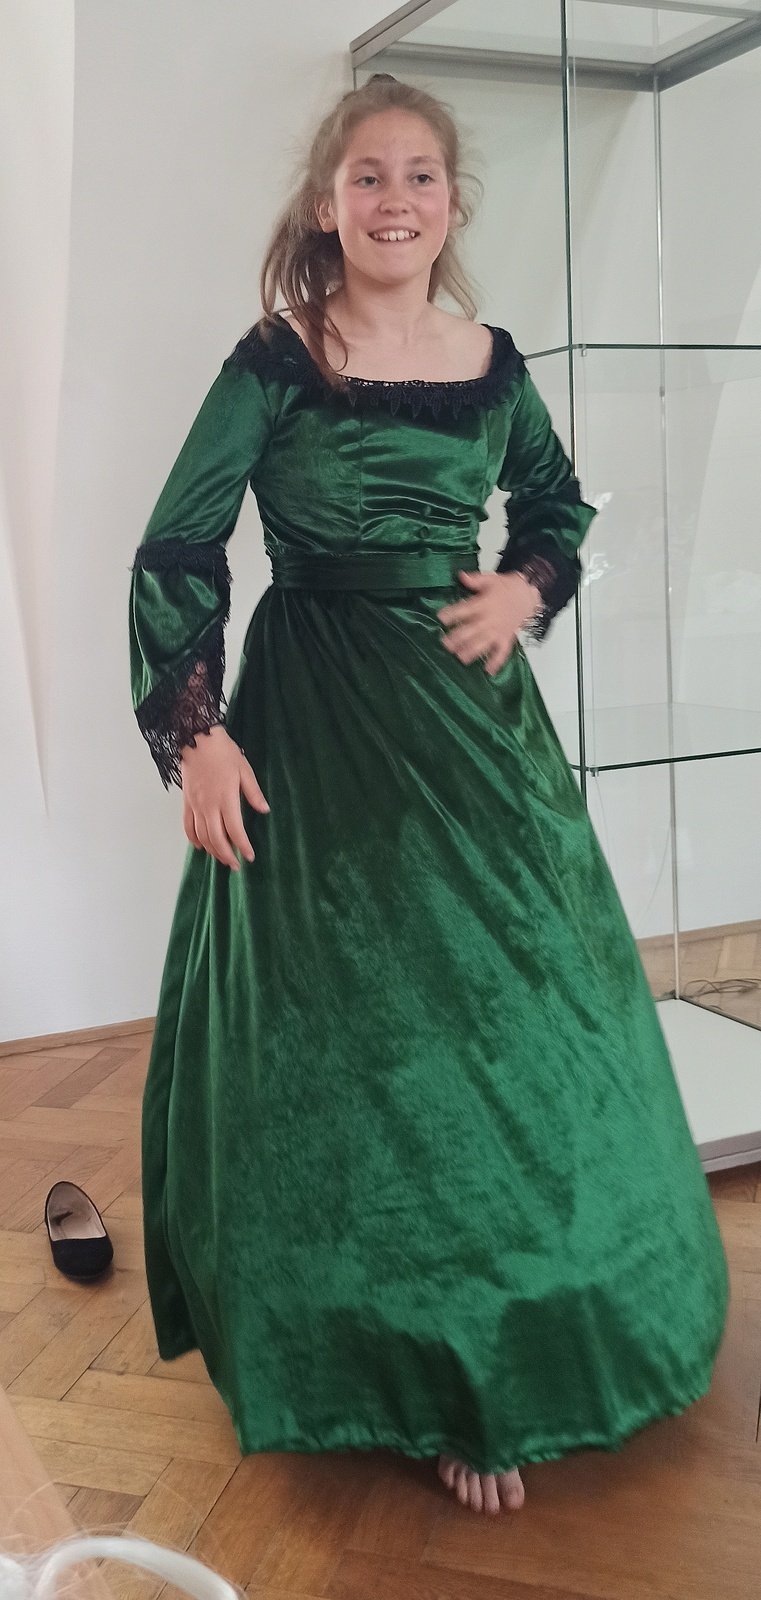 Eliza Skupień si vybrala stejně jako máma zelené šaty.